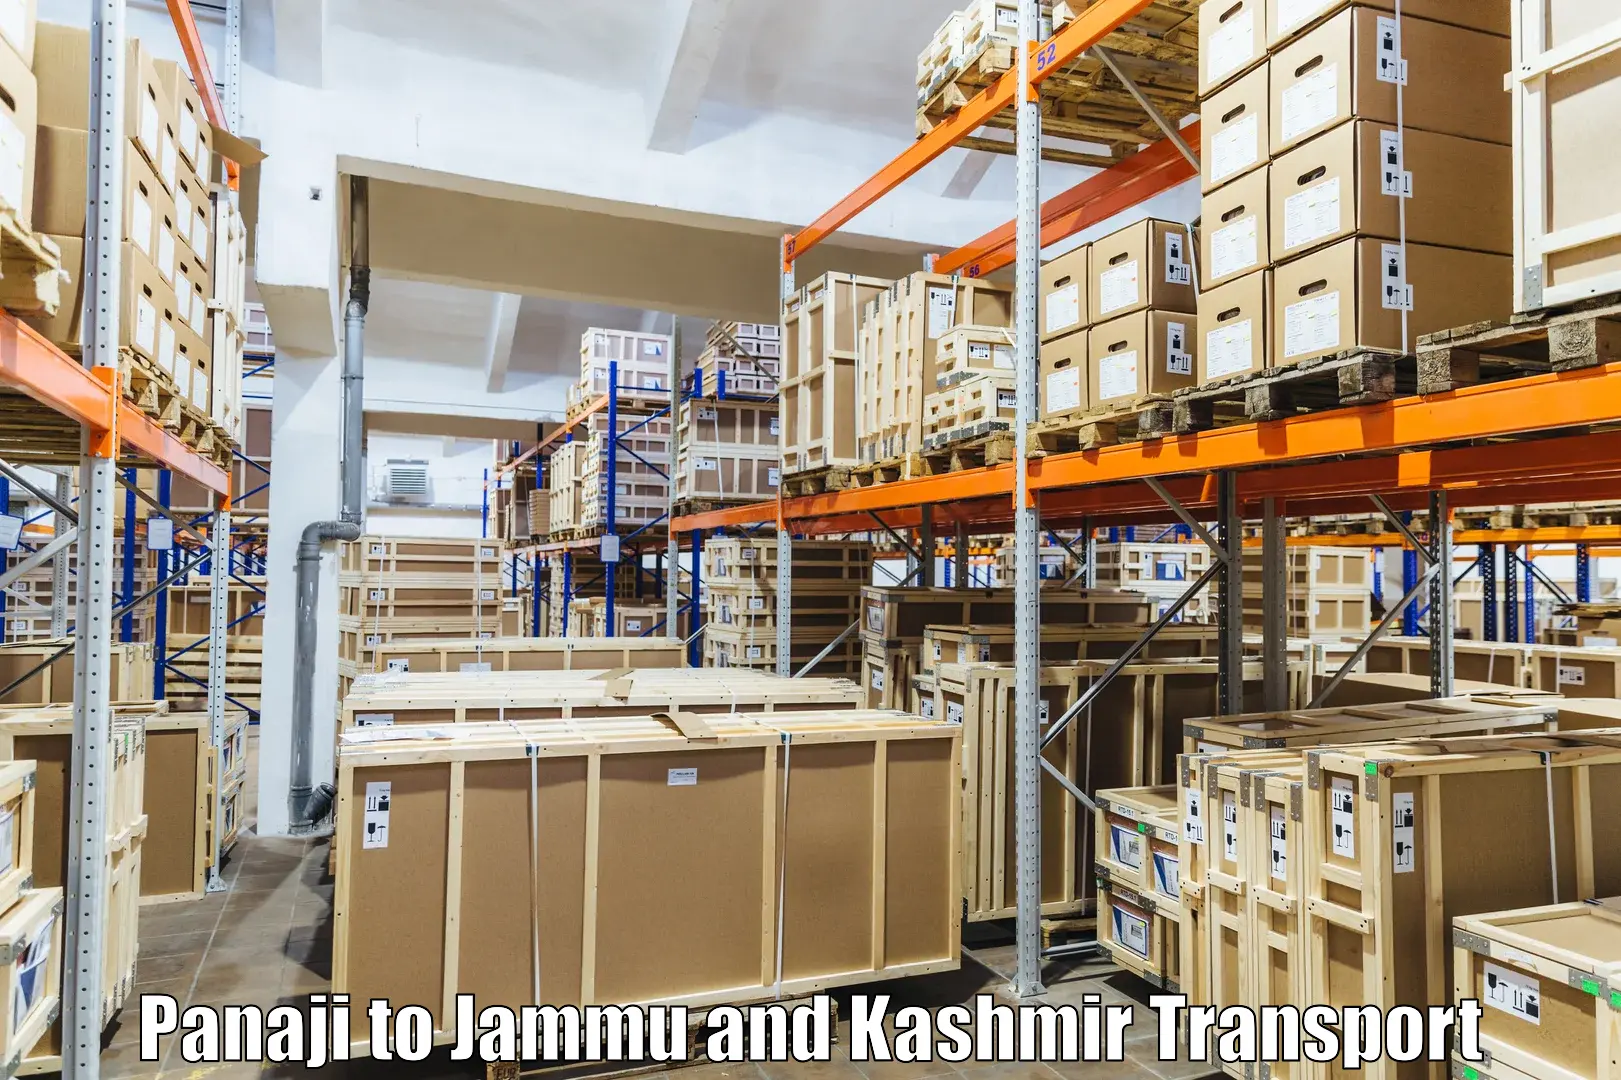 Air freight transport services Panaji to Katra